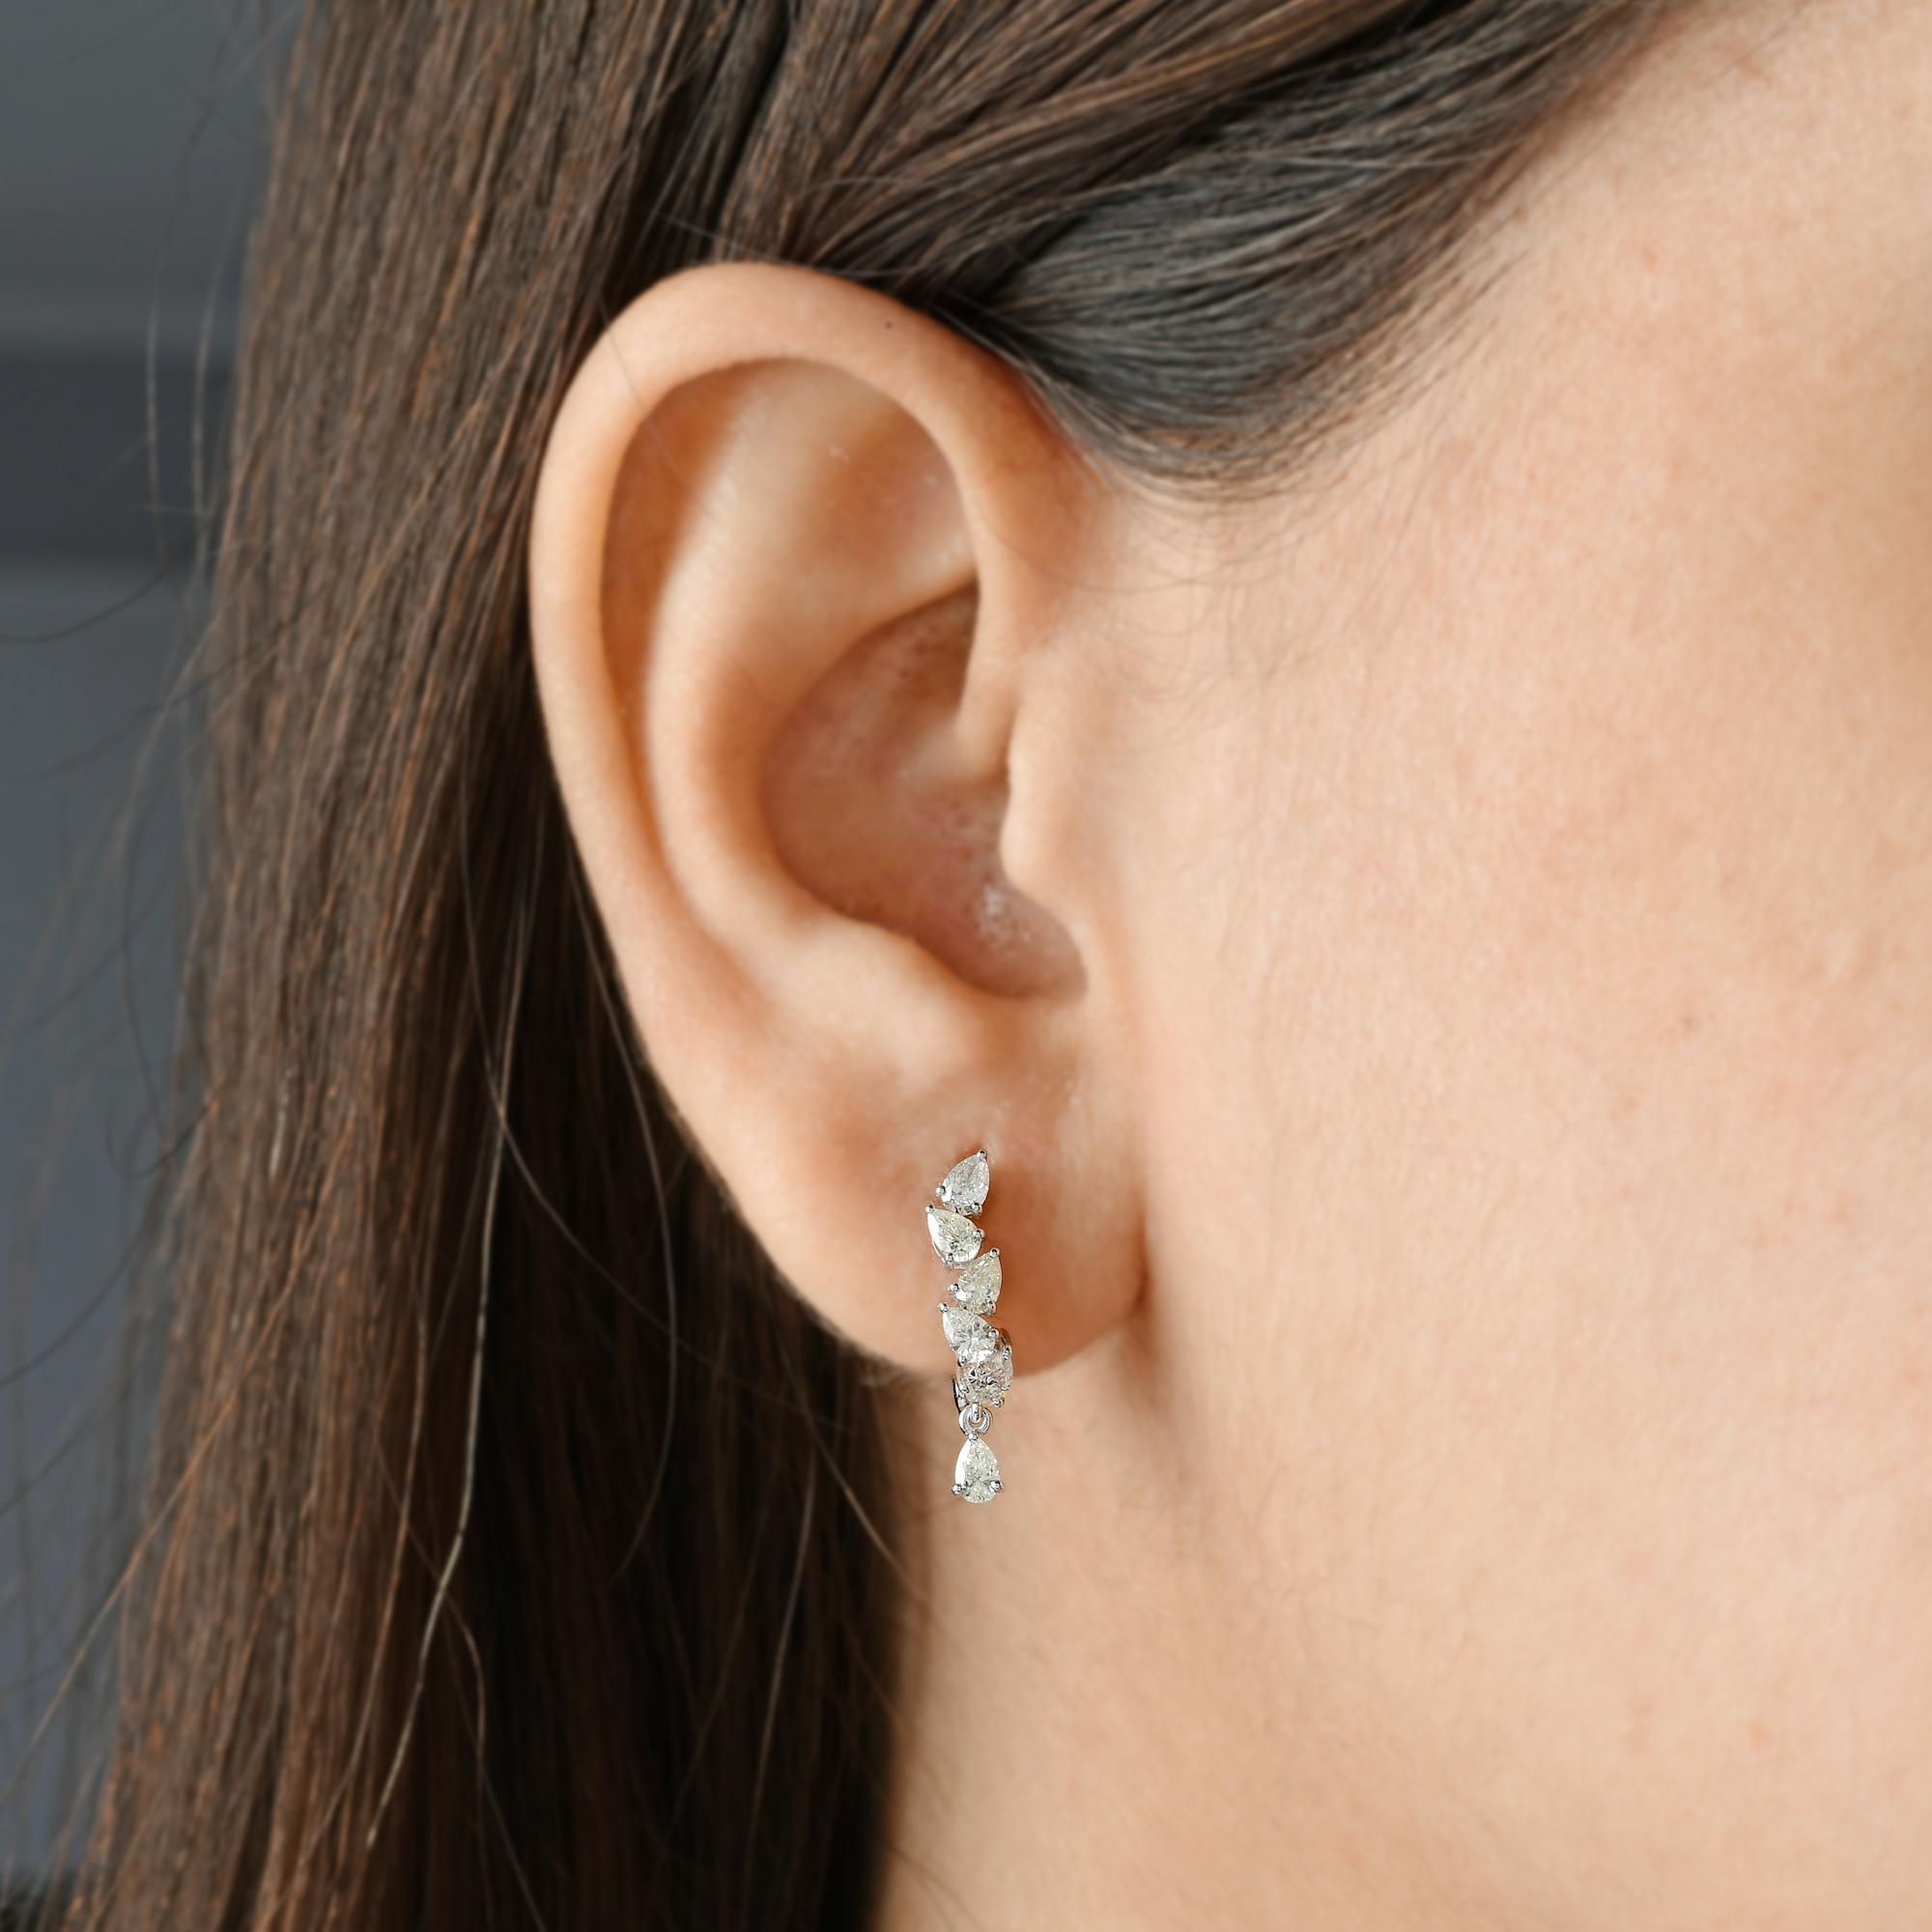 Modern 1 Carat Pear Shape Diamond Hoop Earrings 14 Karat White Gold Handmade Jewelry For Sale